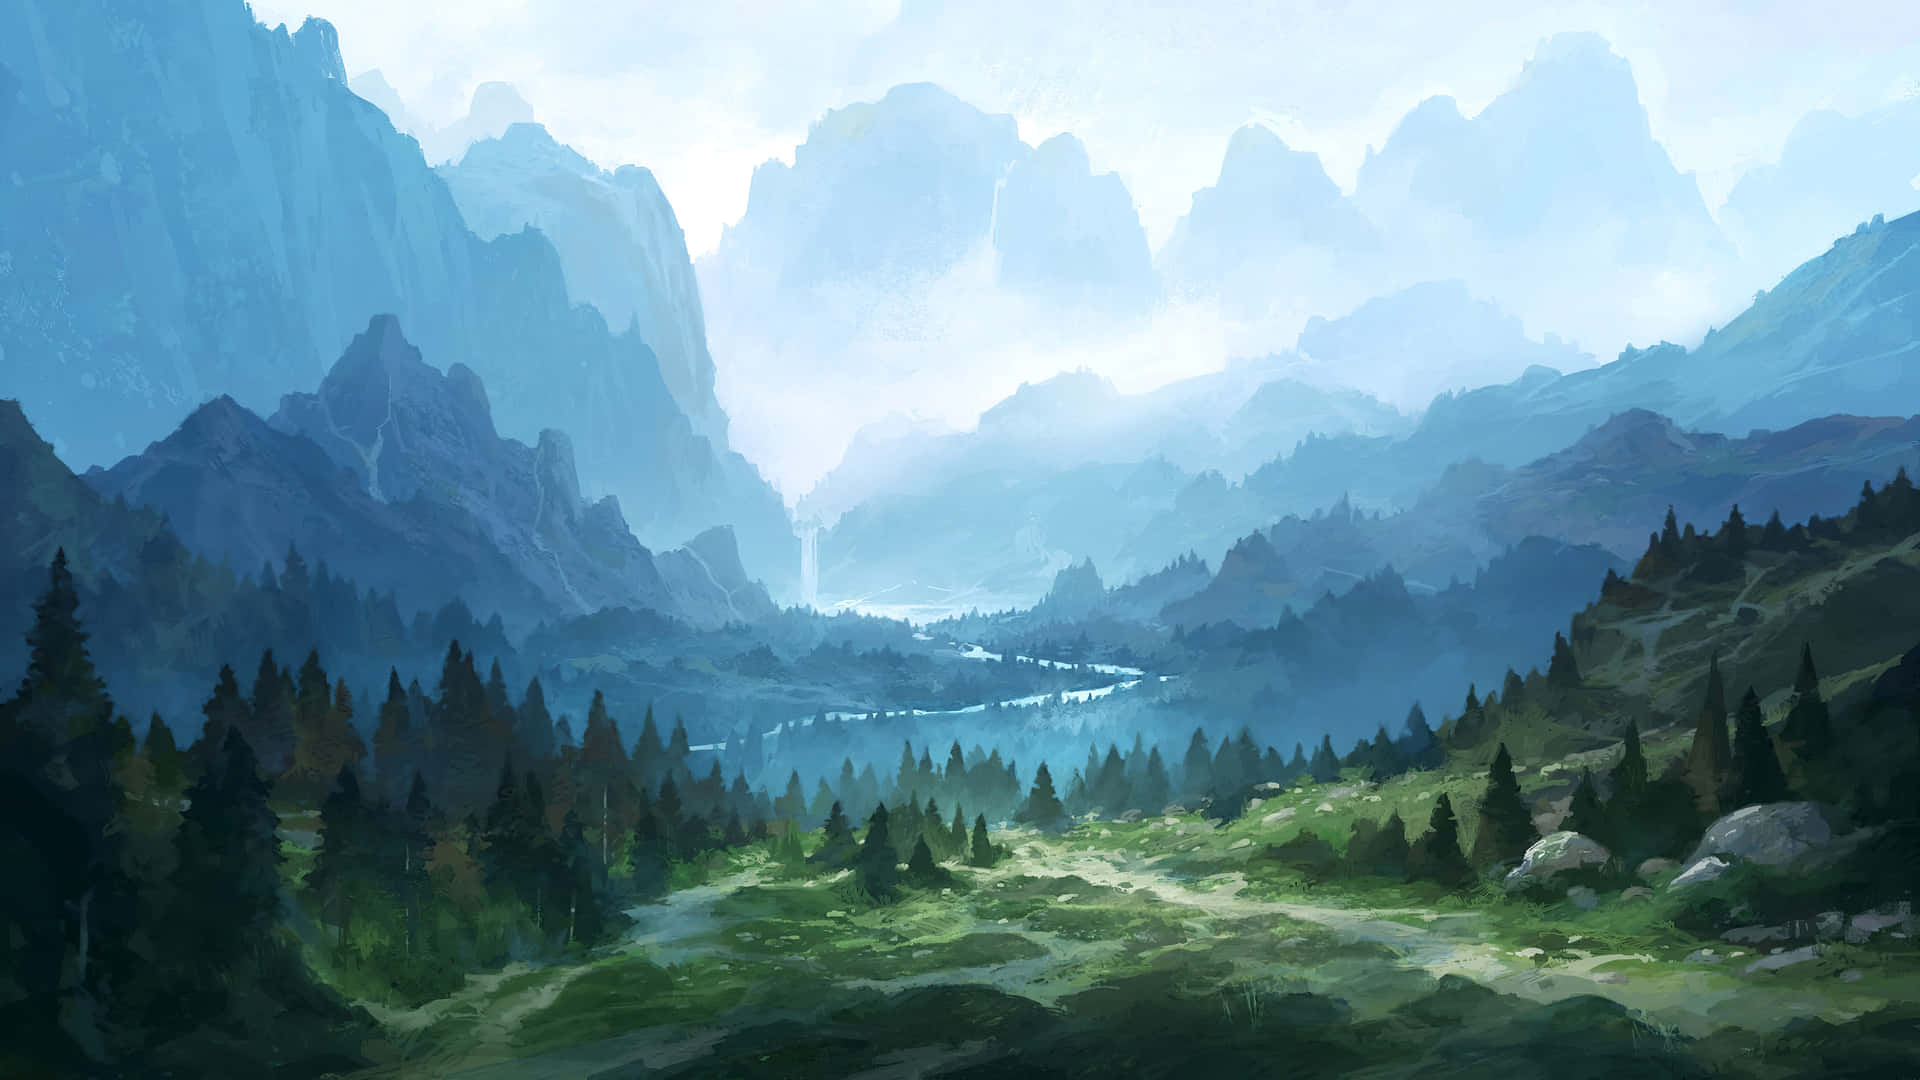 Misty Mountain Landscape Digital Art Wallpaper